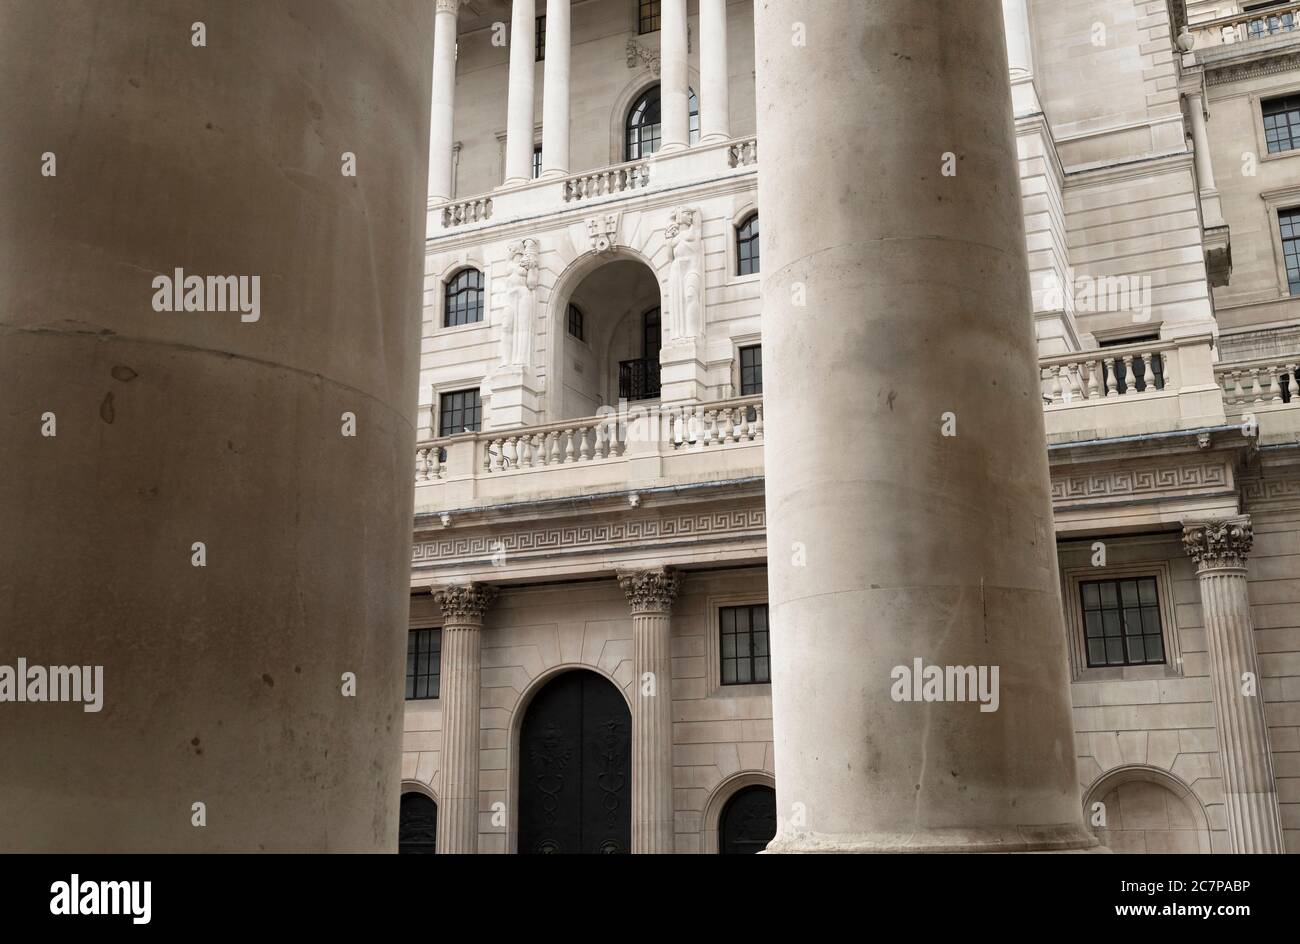 Die Bank of England ist die Zentralbank des Vereinigten Königreichs. Manchmal auch bekannt als die ‘Alte Dame’ der Threadneedle Street'. Threadneedle Street, London, Großbritannien 18 Mar 2017 Stockfoto